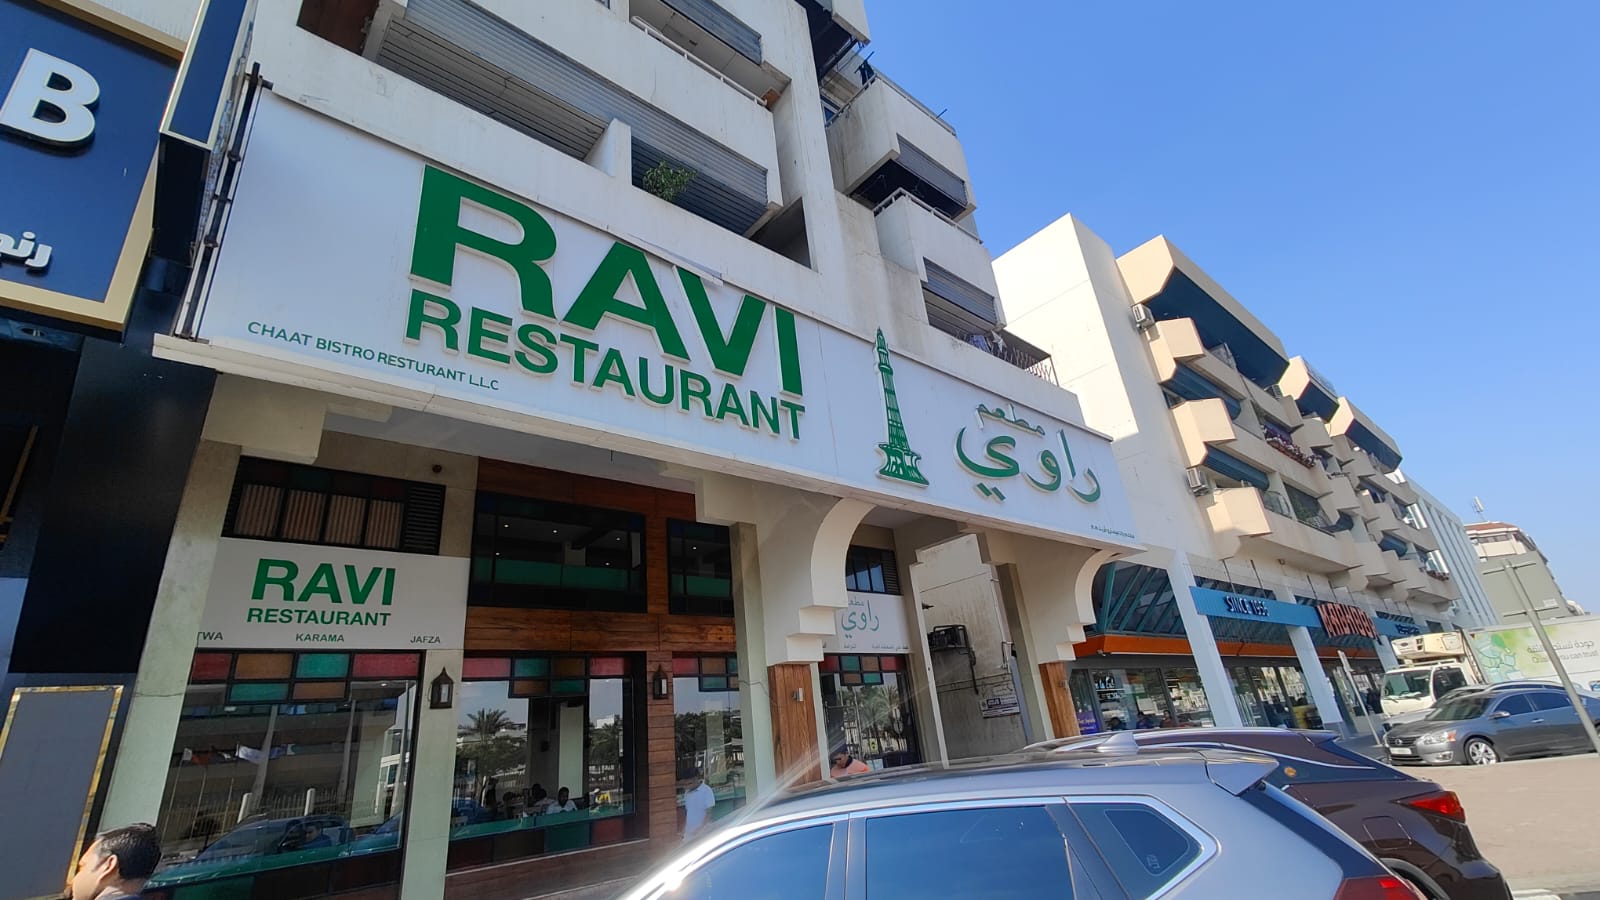 1706129734 Ravi Restaurant Dubai Excellent Pakistani Food jpeg